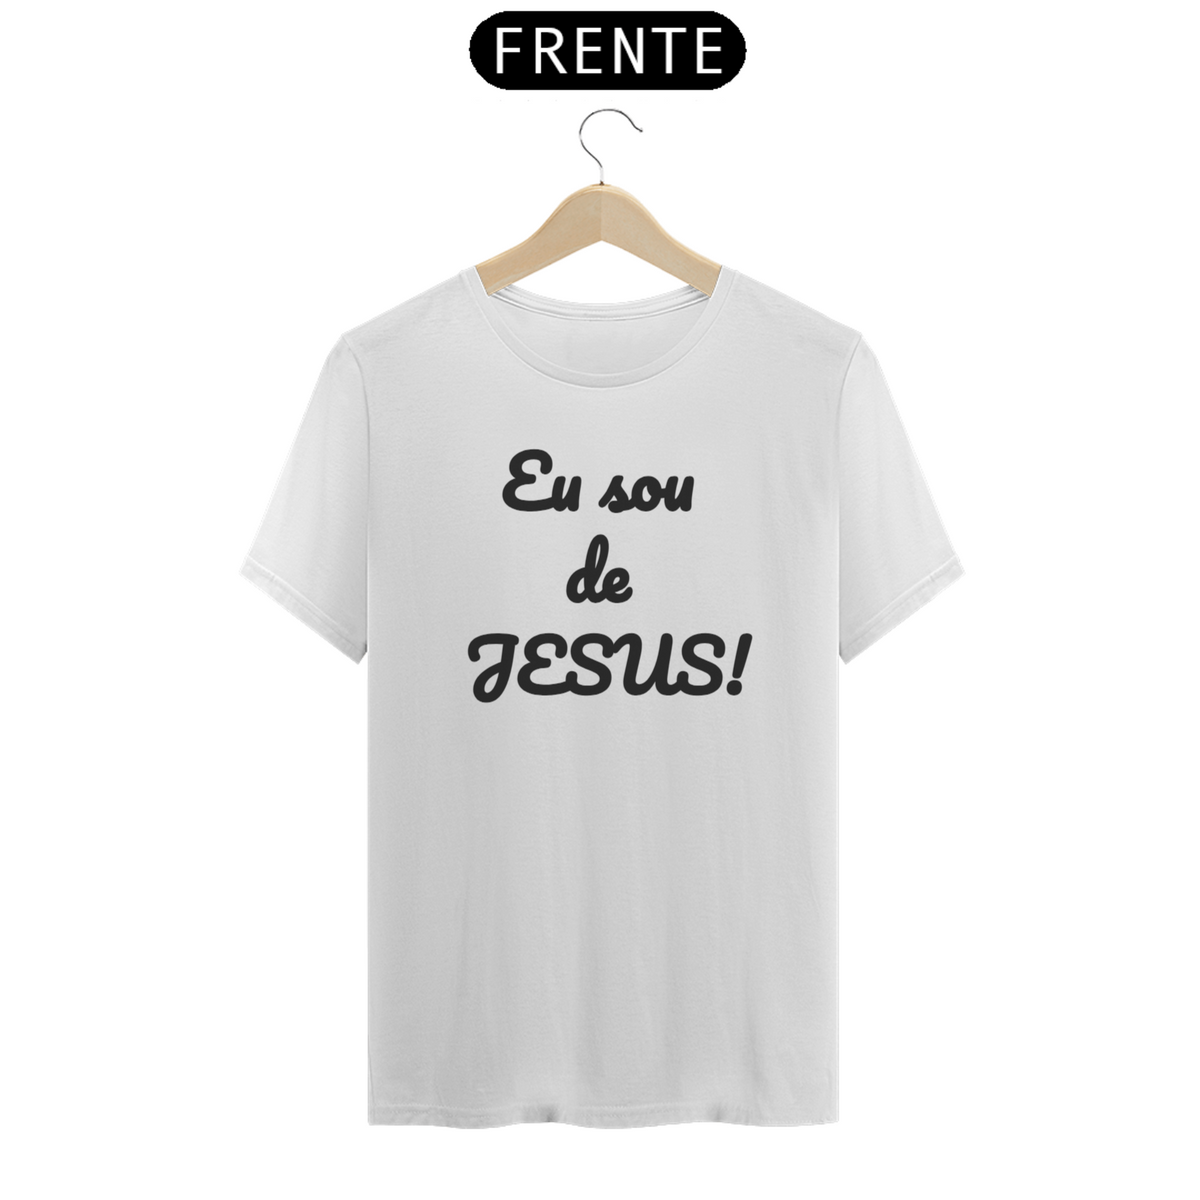 Nome do produto: Camisa classic letra preta eu sou de Jesus